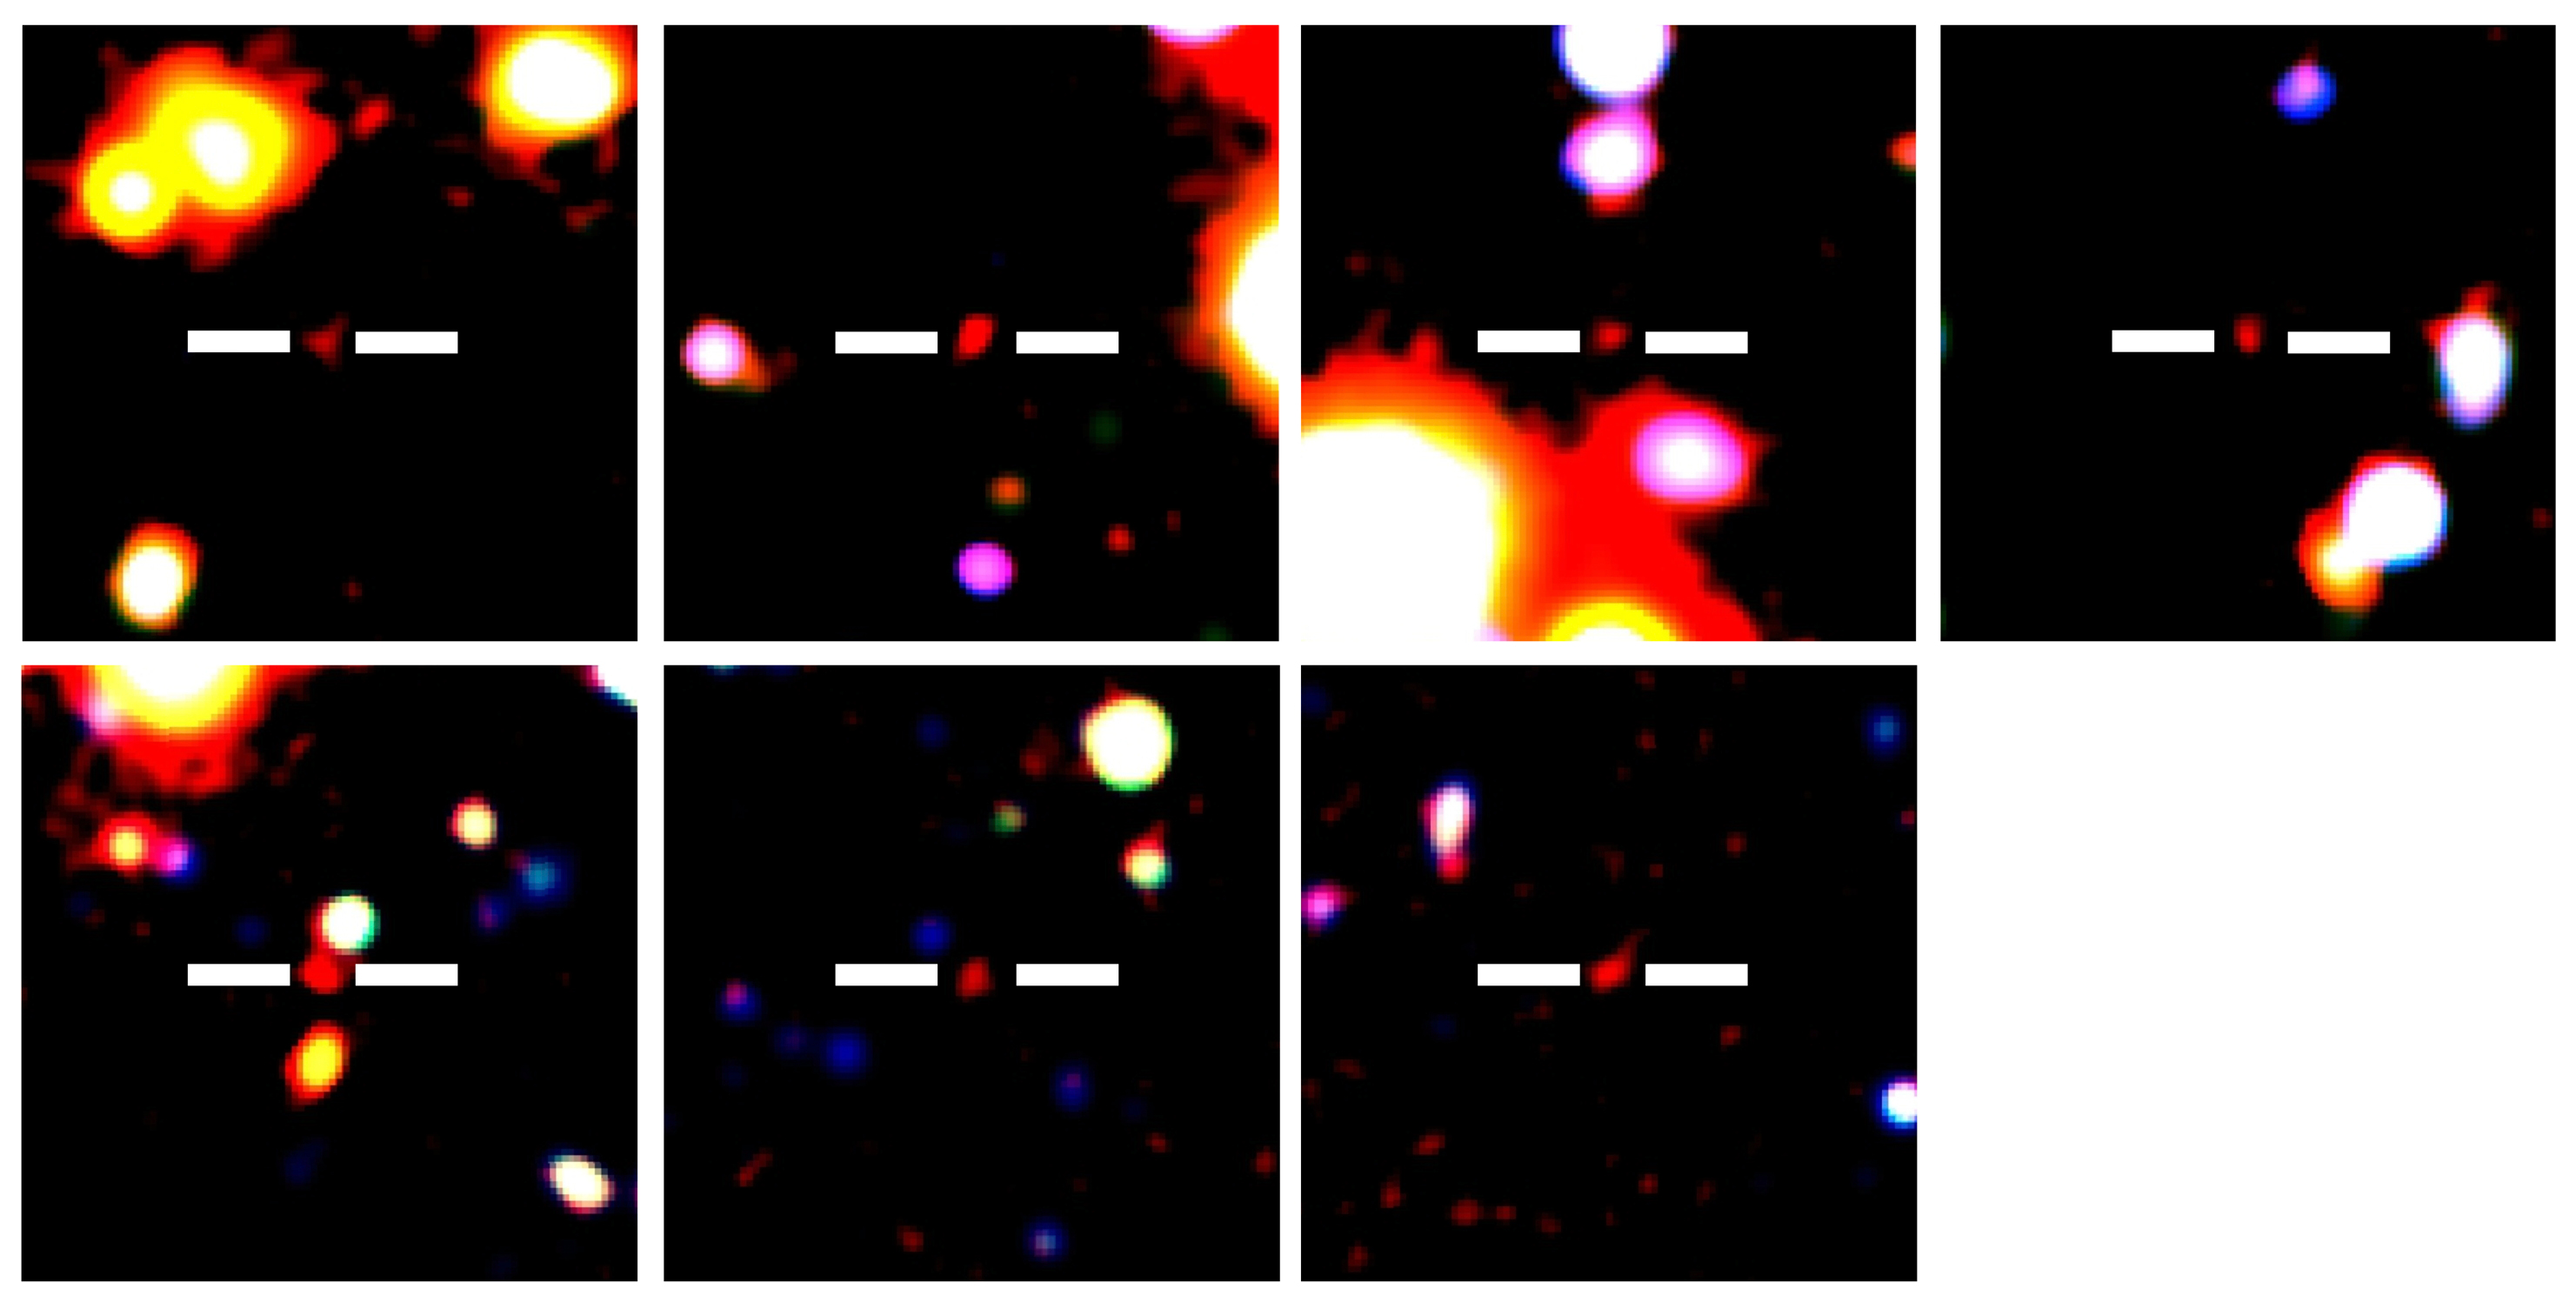 Las imágenes rojas entre dos líneas blancas representan las galaxias LAE encontradas. Fuente: Observatorio Astronómico Nacional de Japón.